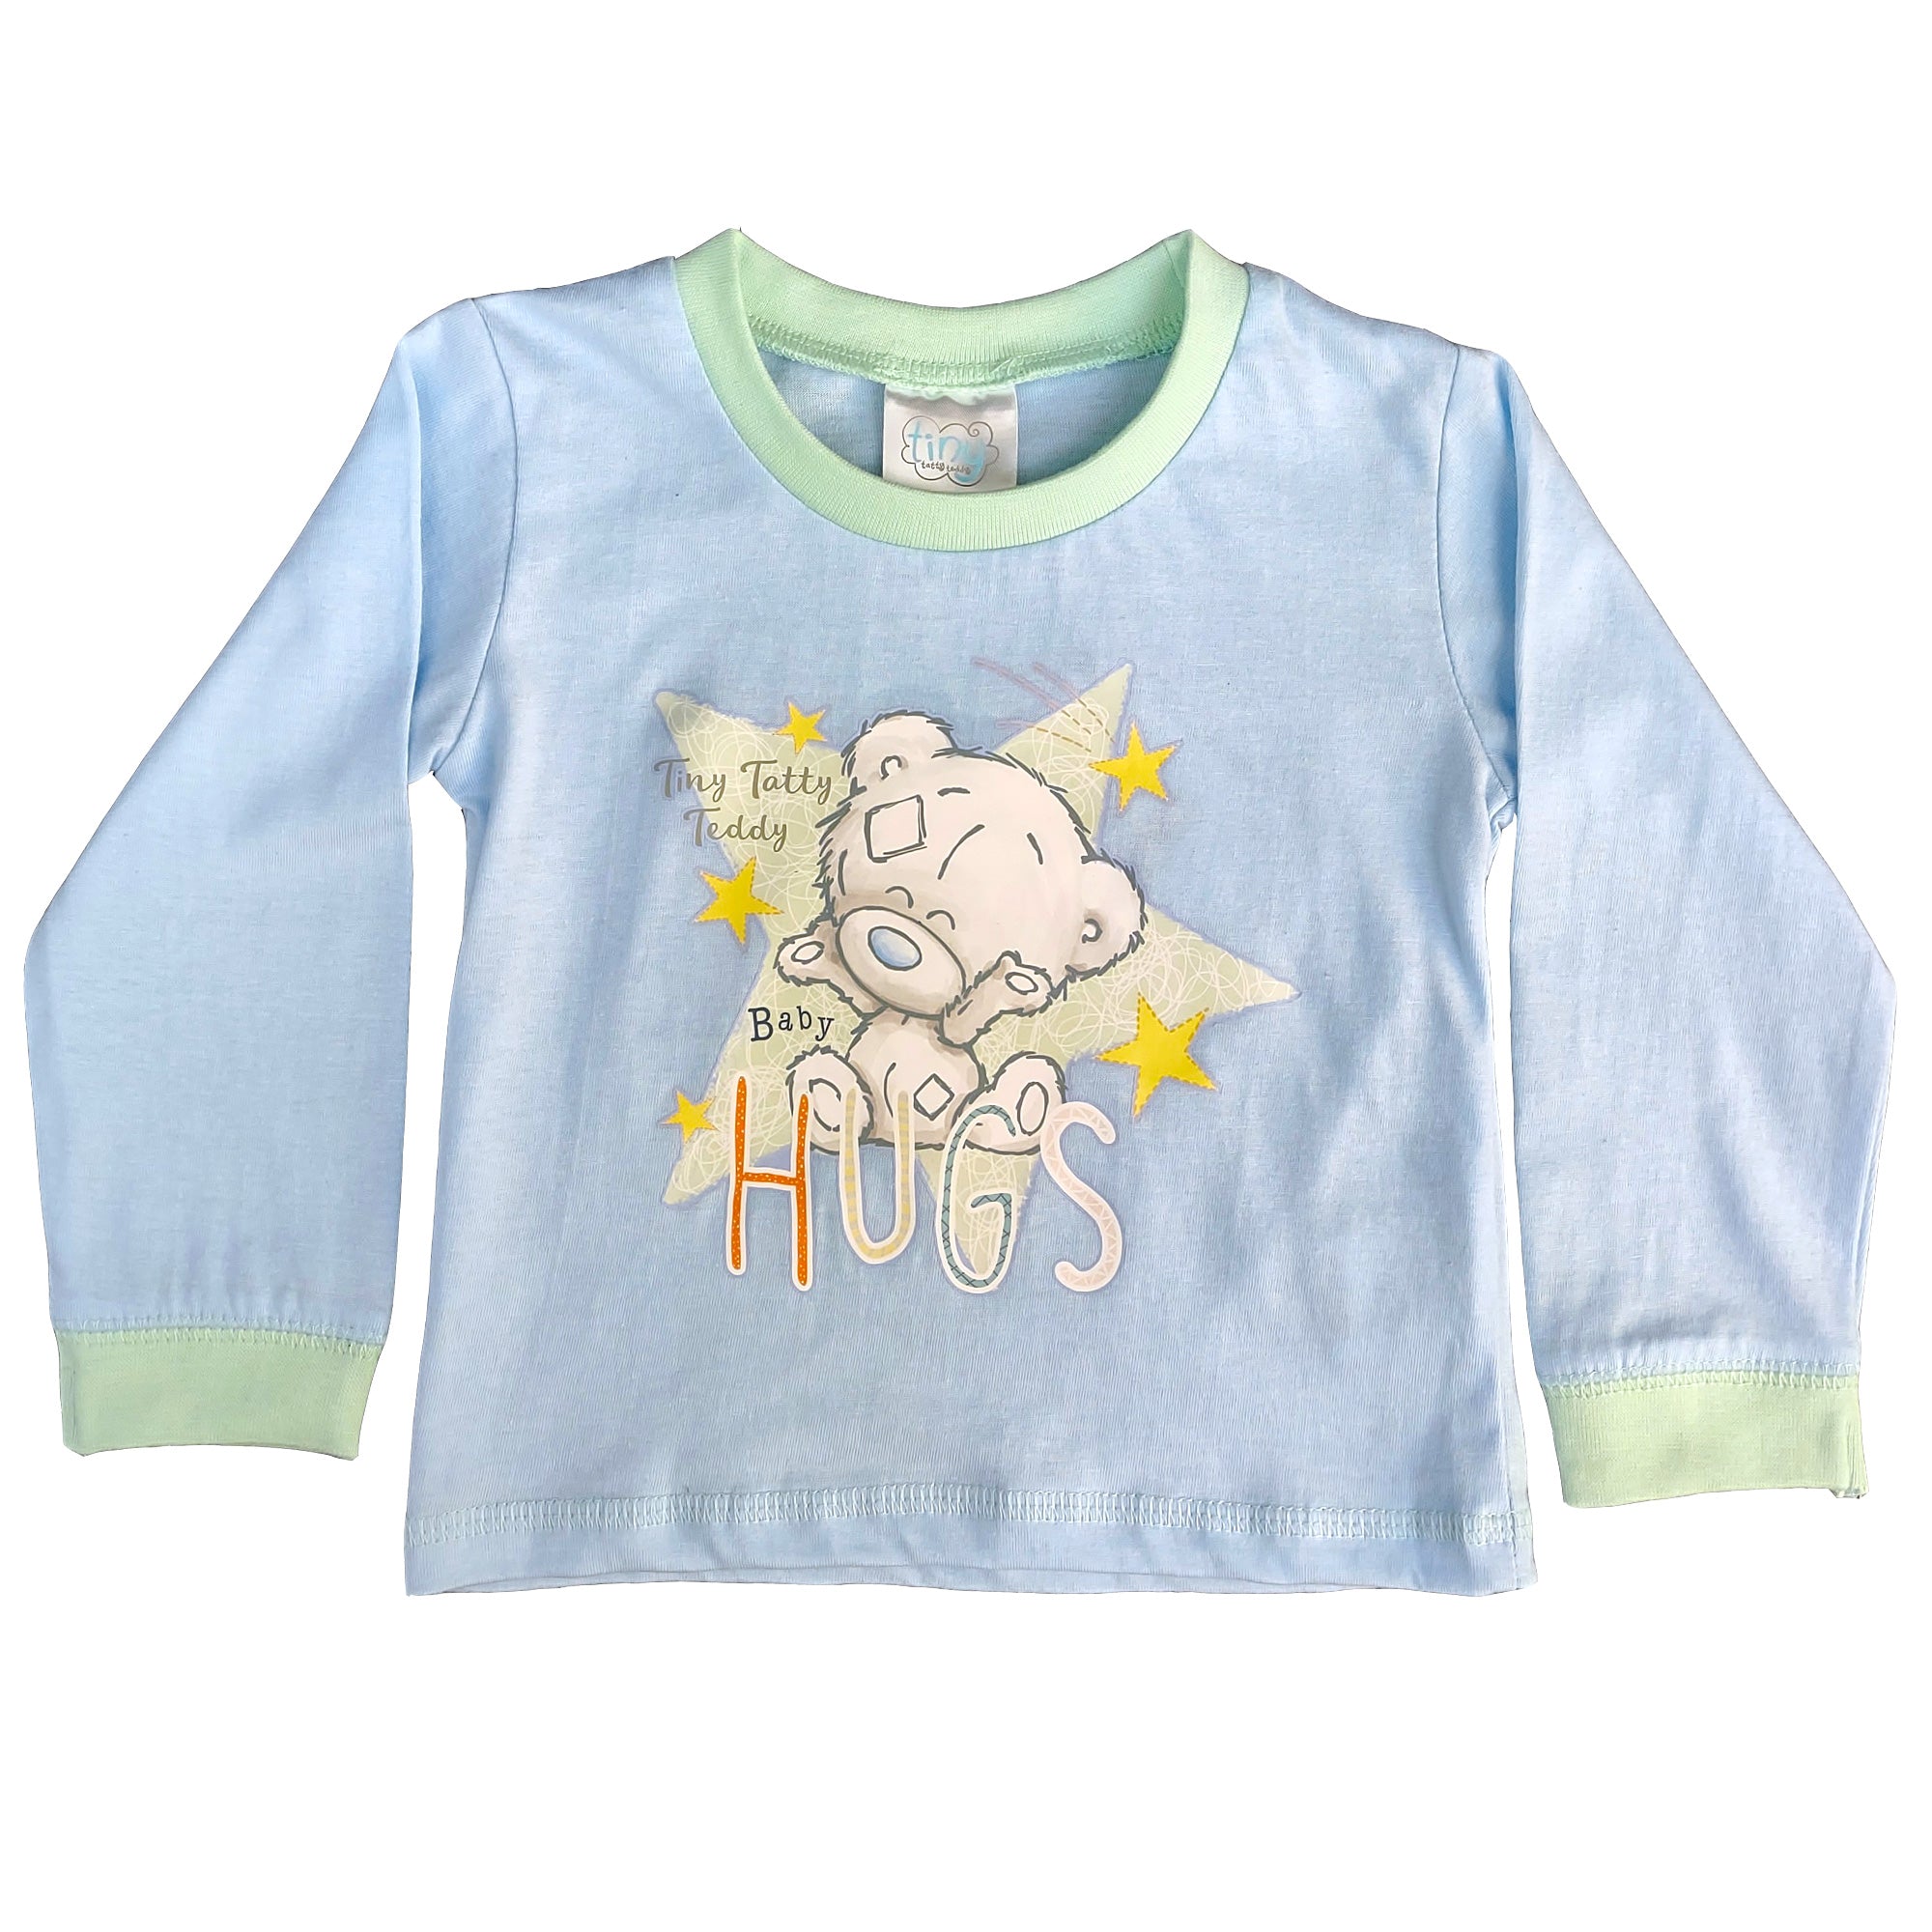 Tatty Teddy Baby Pyjamas - Tiny Teddy Hugs - 2 Piece Set- Sizes 6-24 Months Top